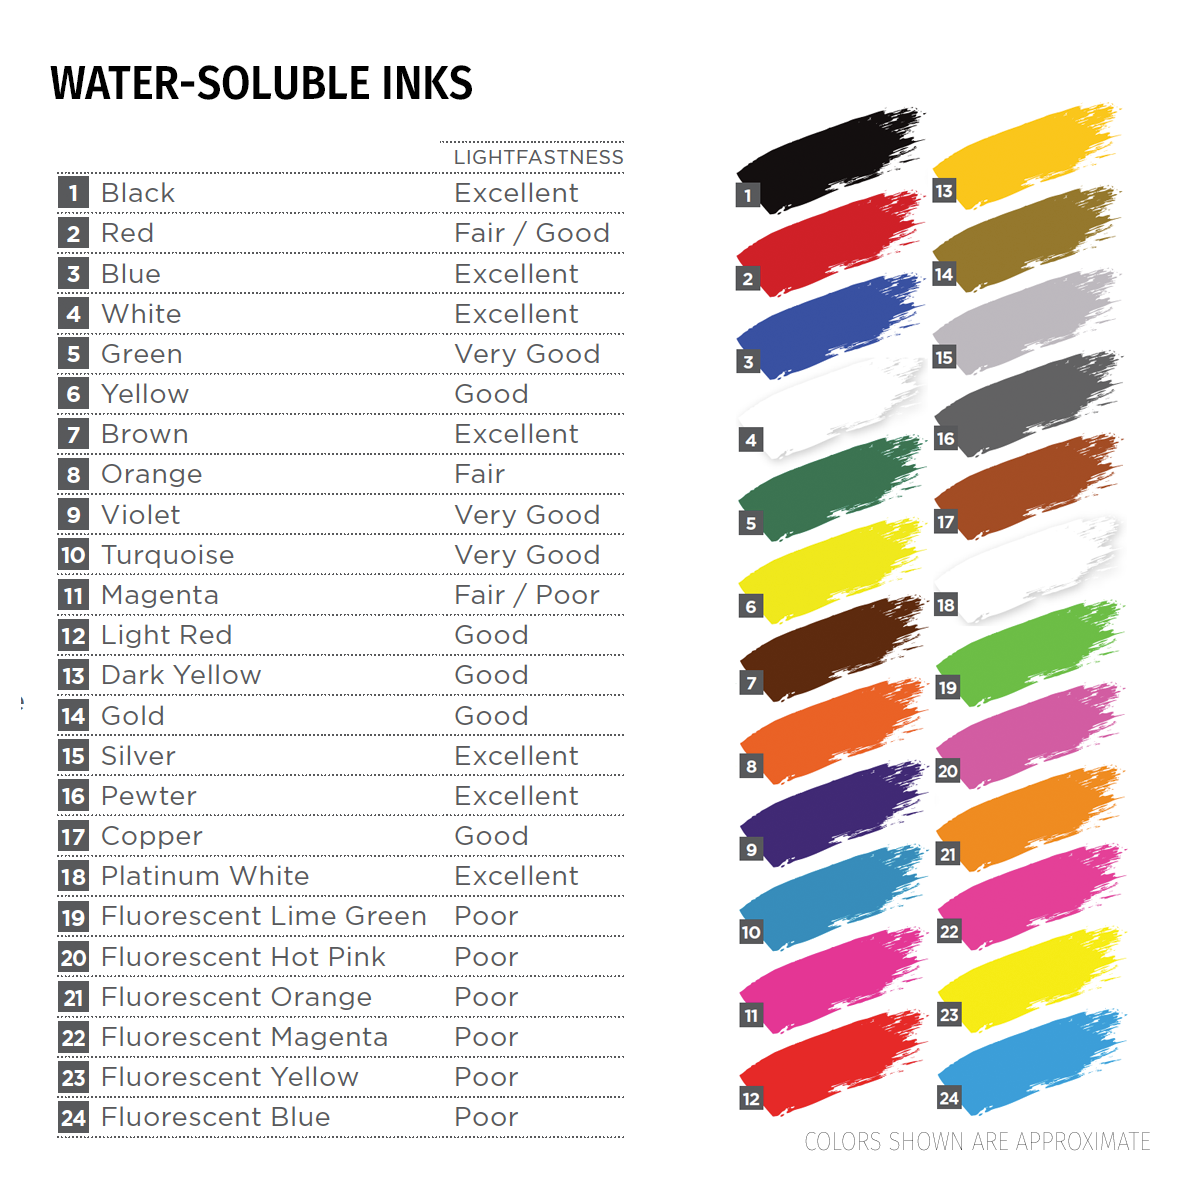 Speedball® Water Soluble Block Printing Ink 5 oz Orange